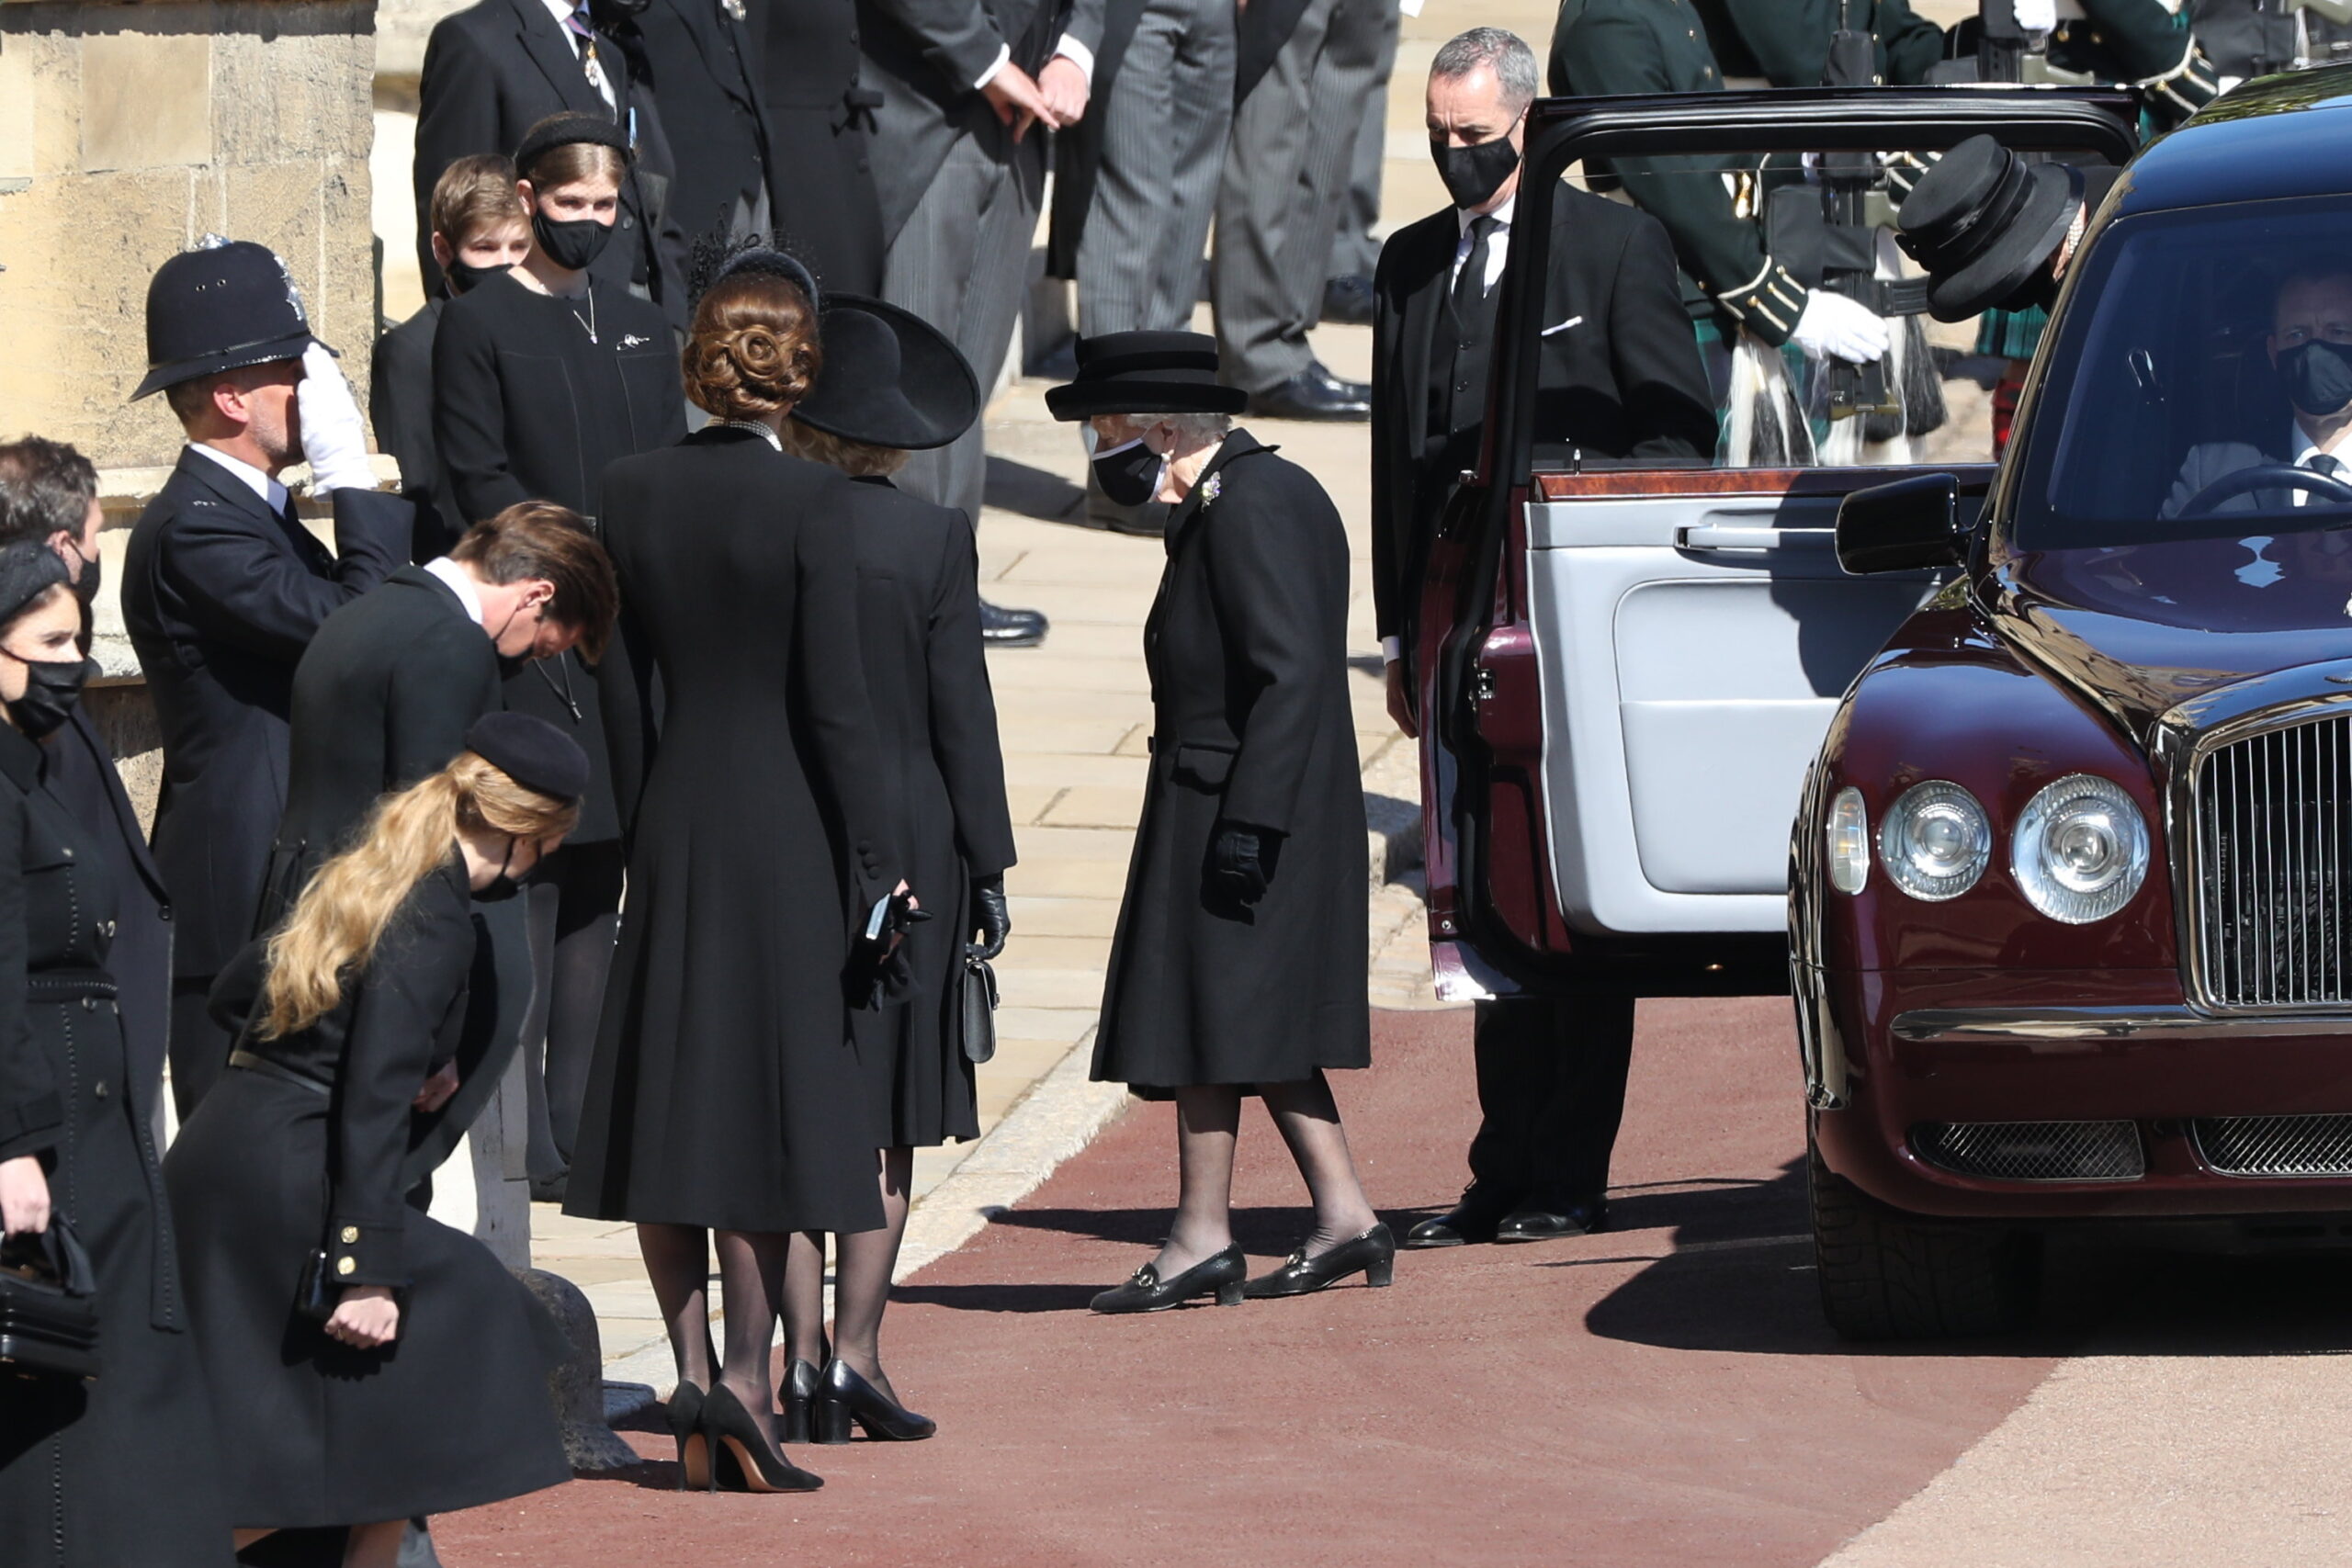 Βασίλισσα Ελισάβετ: Καταβεβλημένη και μαυροφορούσα αλλά με απόλυτη τάξη στην κηδεία του συζύγου της – Φωτογραφίες